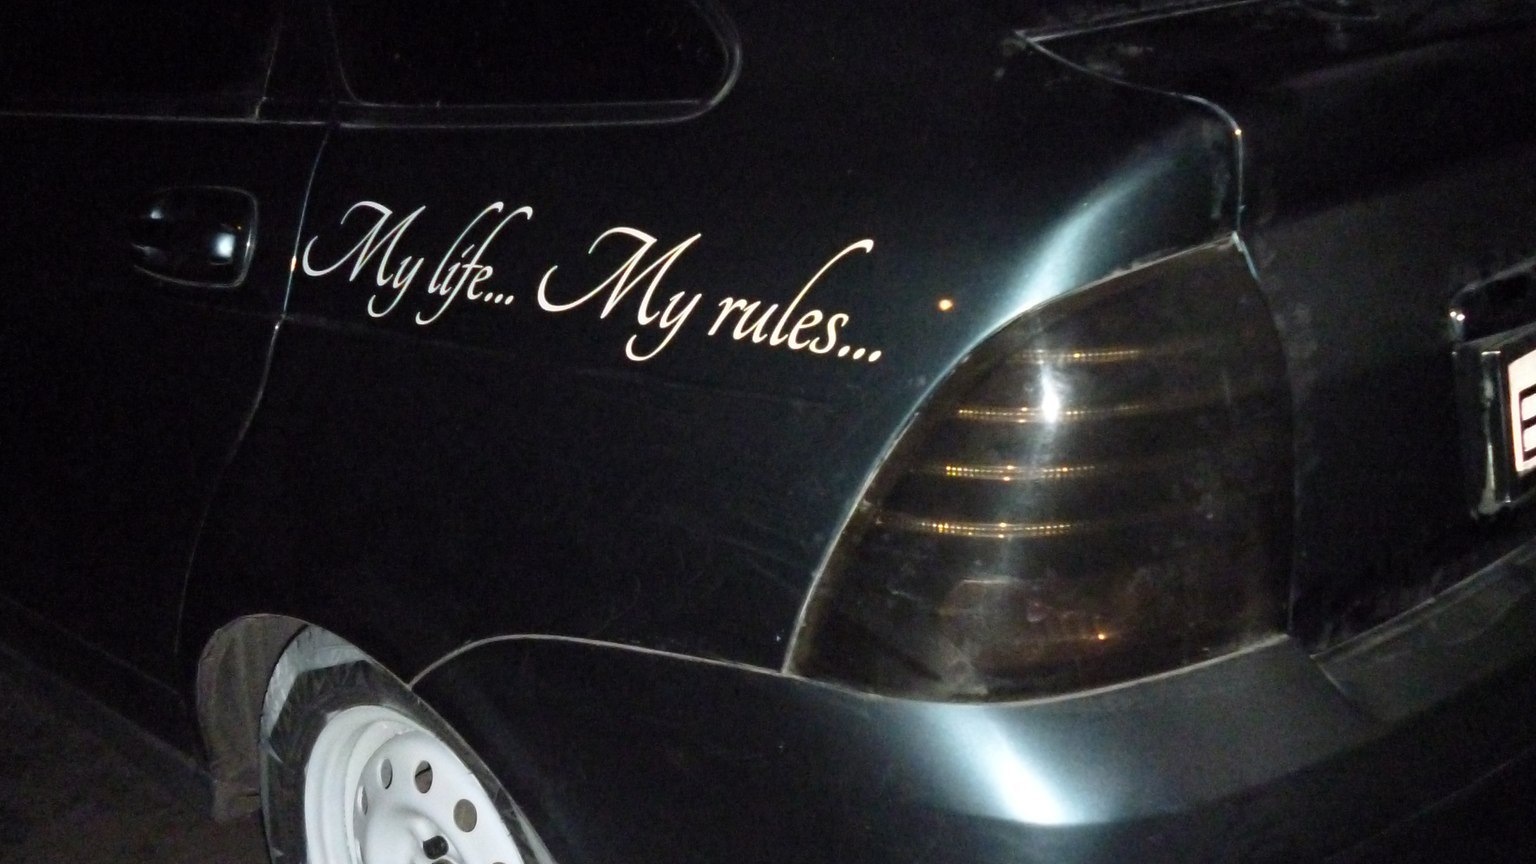 Me life my rules. Наклейка май лайф май рулез. Наклейка на авто my Life my Rules. Черная машина с надписями. Красивые надписи на машину.